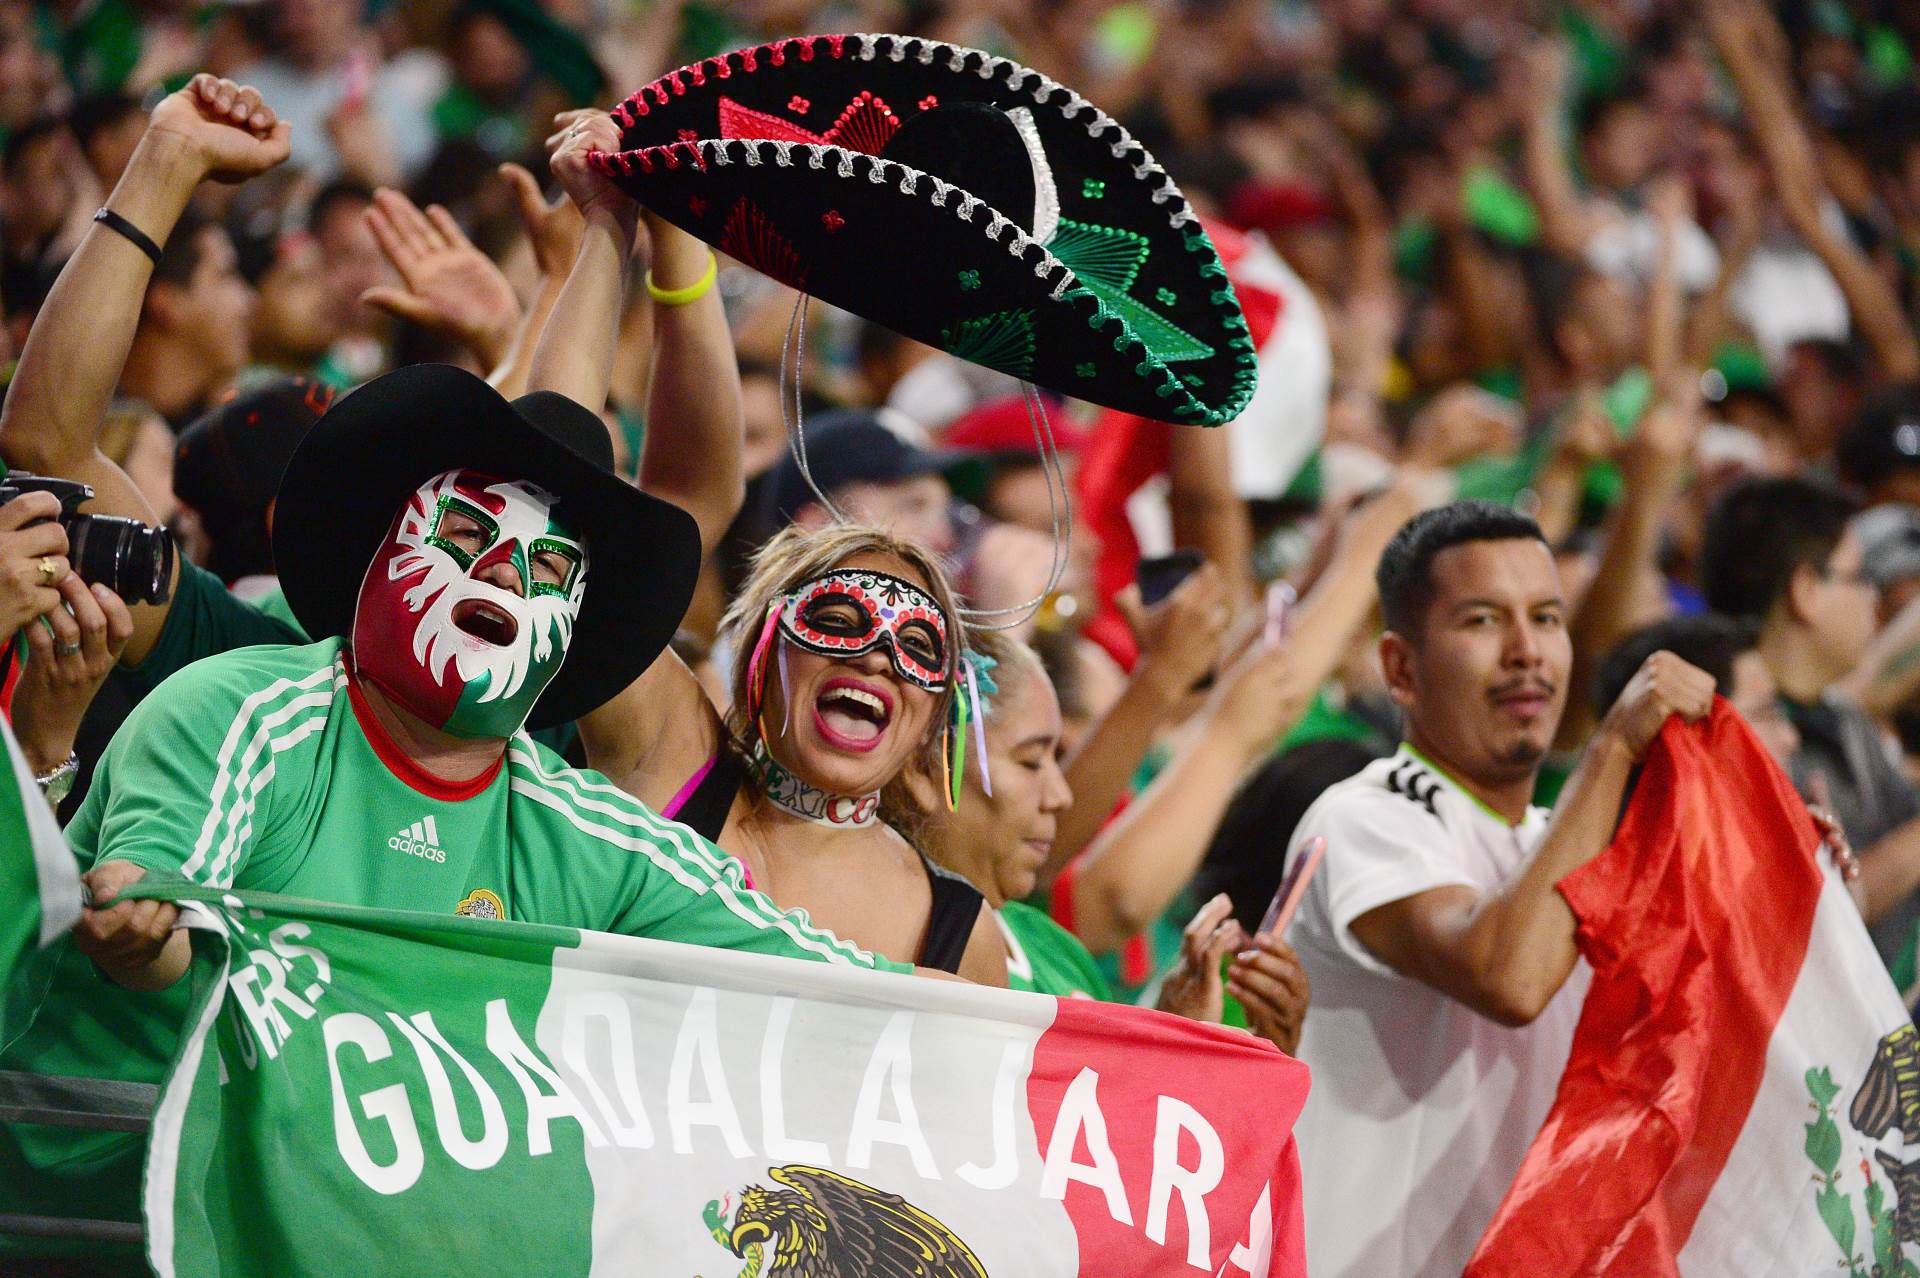  Meksiko "svirao kraj": Nema šampiona, takmičenje poništeno! 